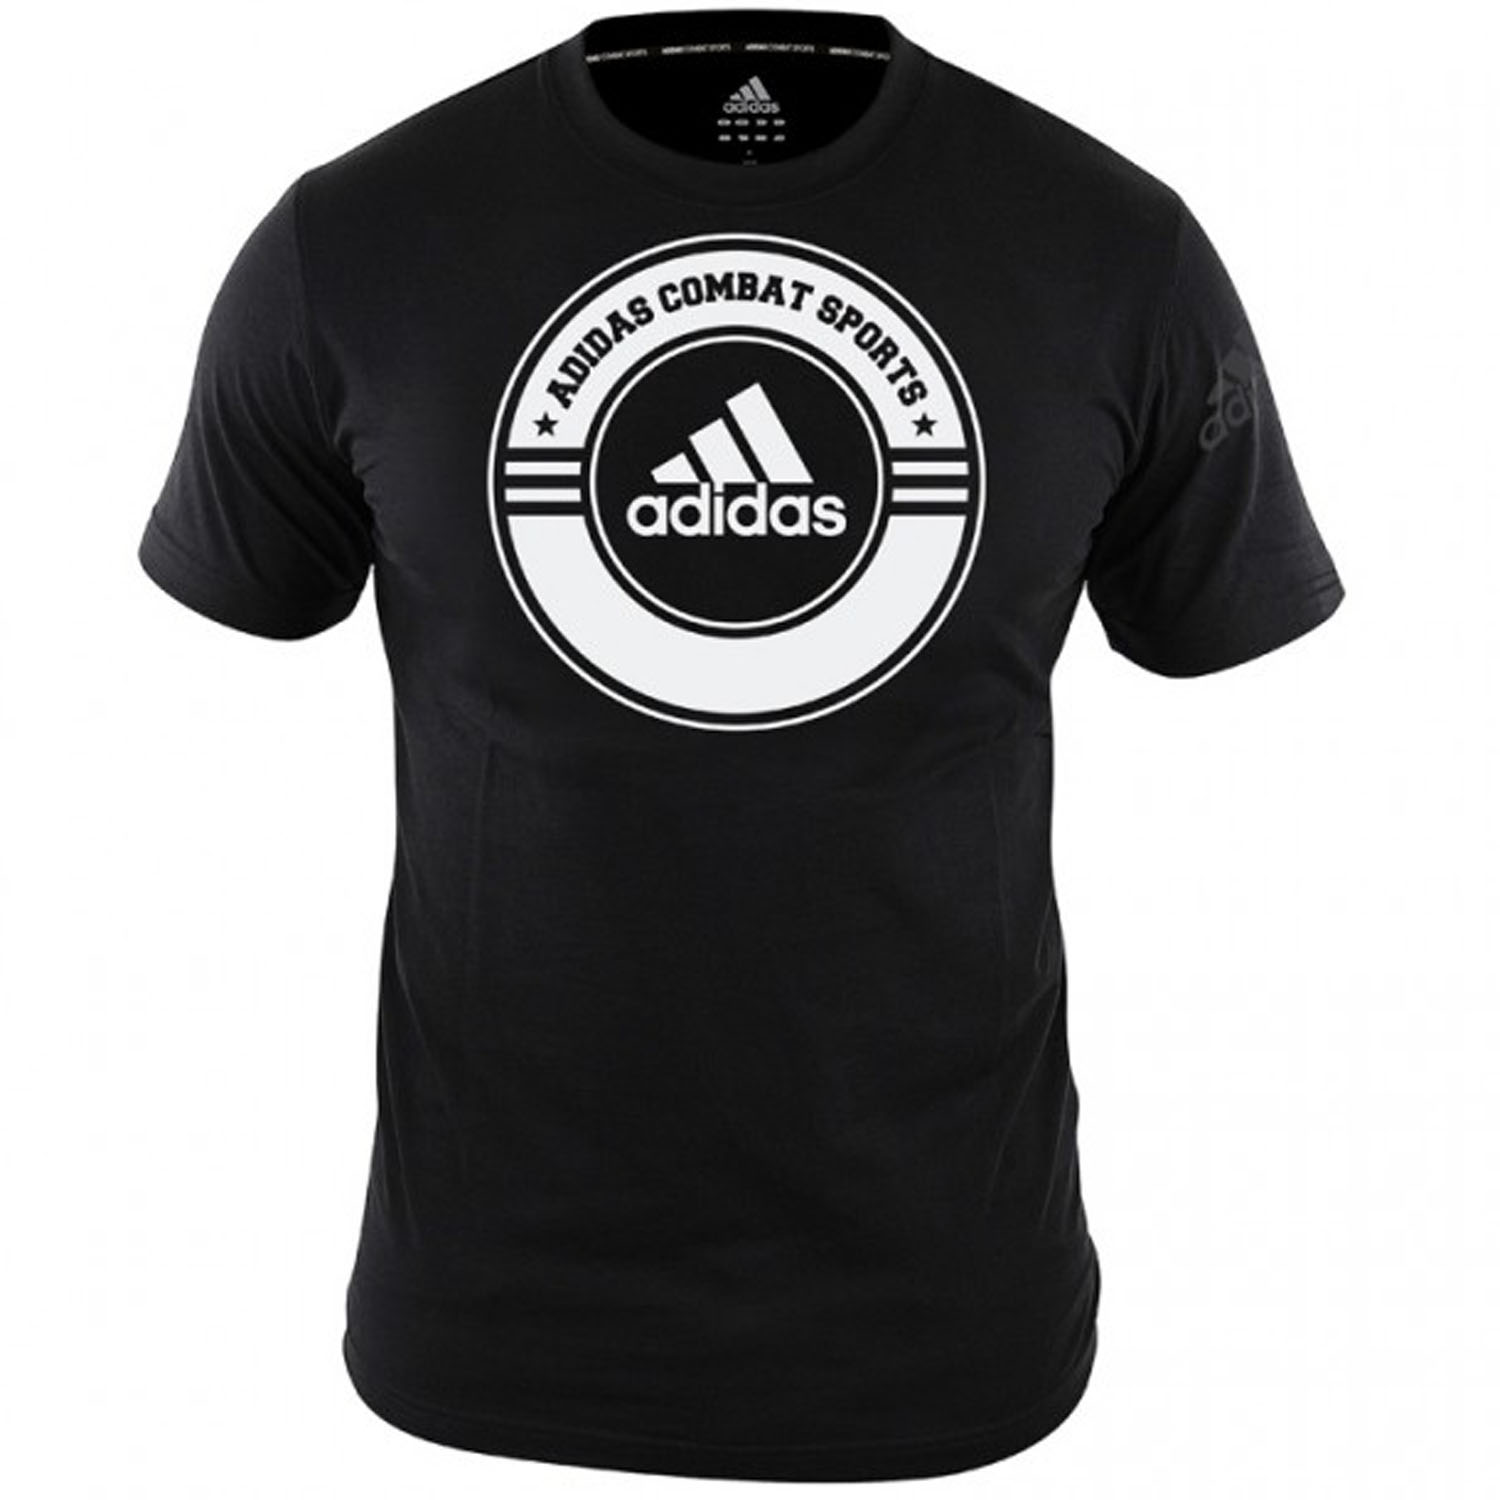 adidas T-Shirt, Combat Sports, schwarz-weiß